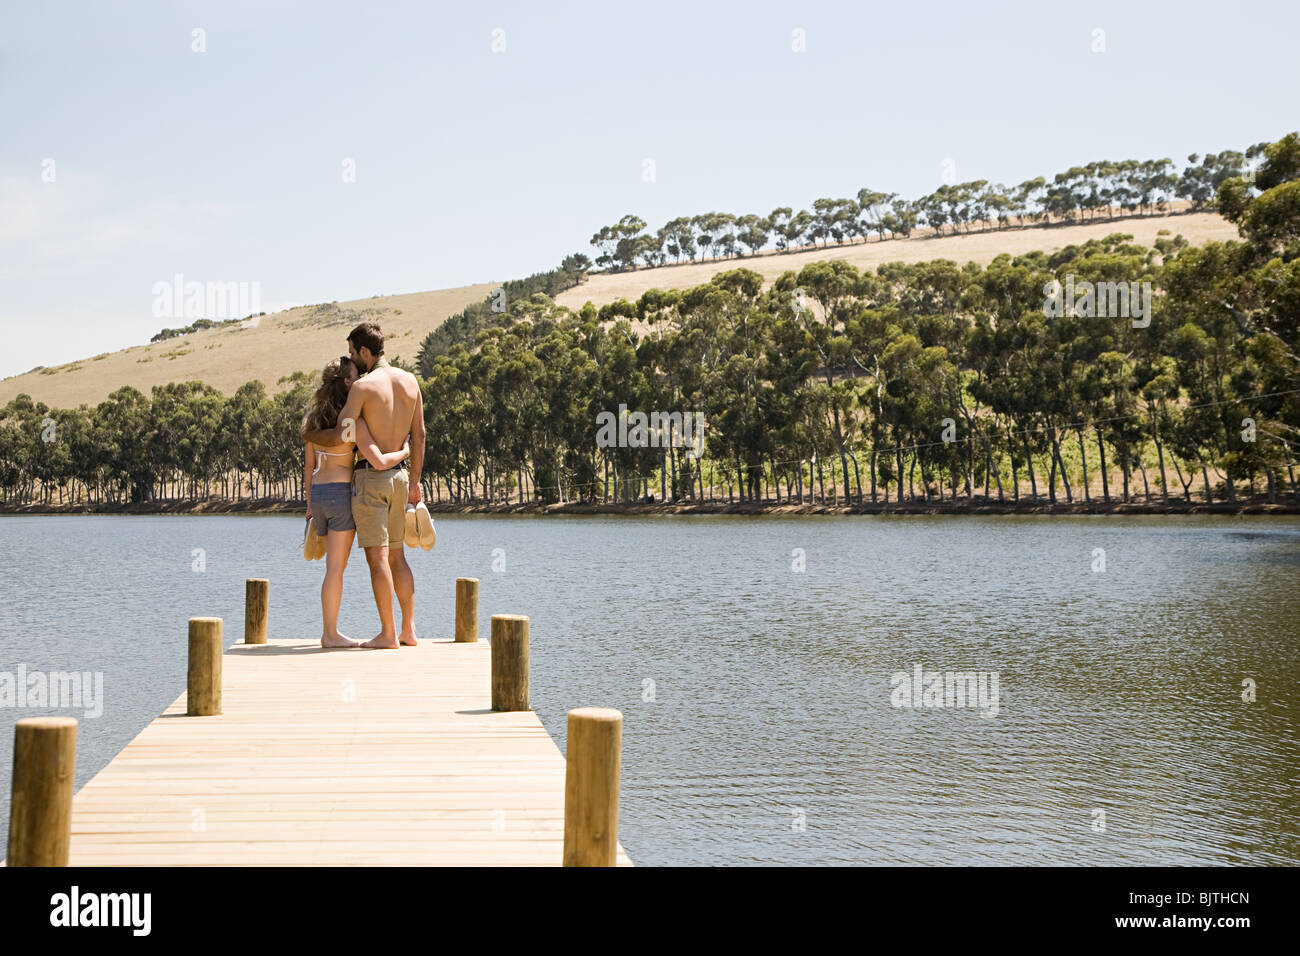 Couple enjoying lakeside vacation Stock Photo